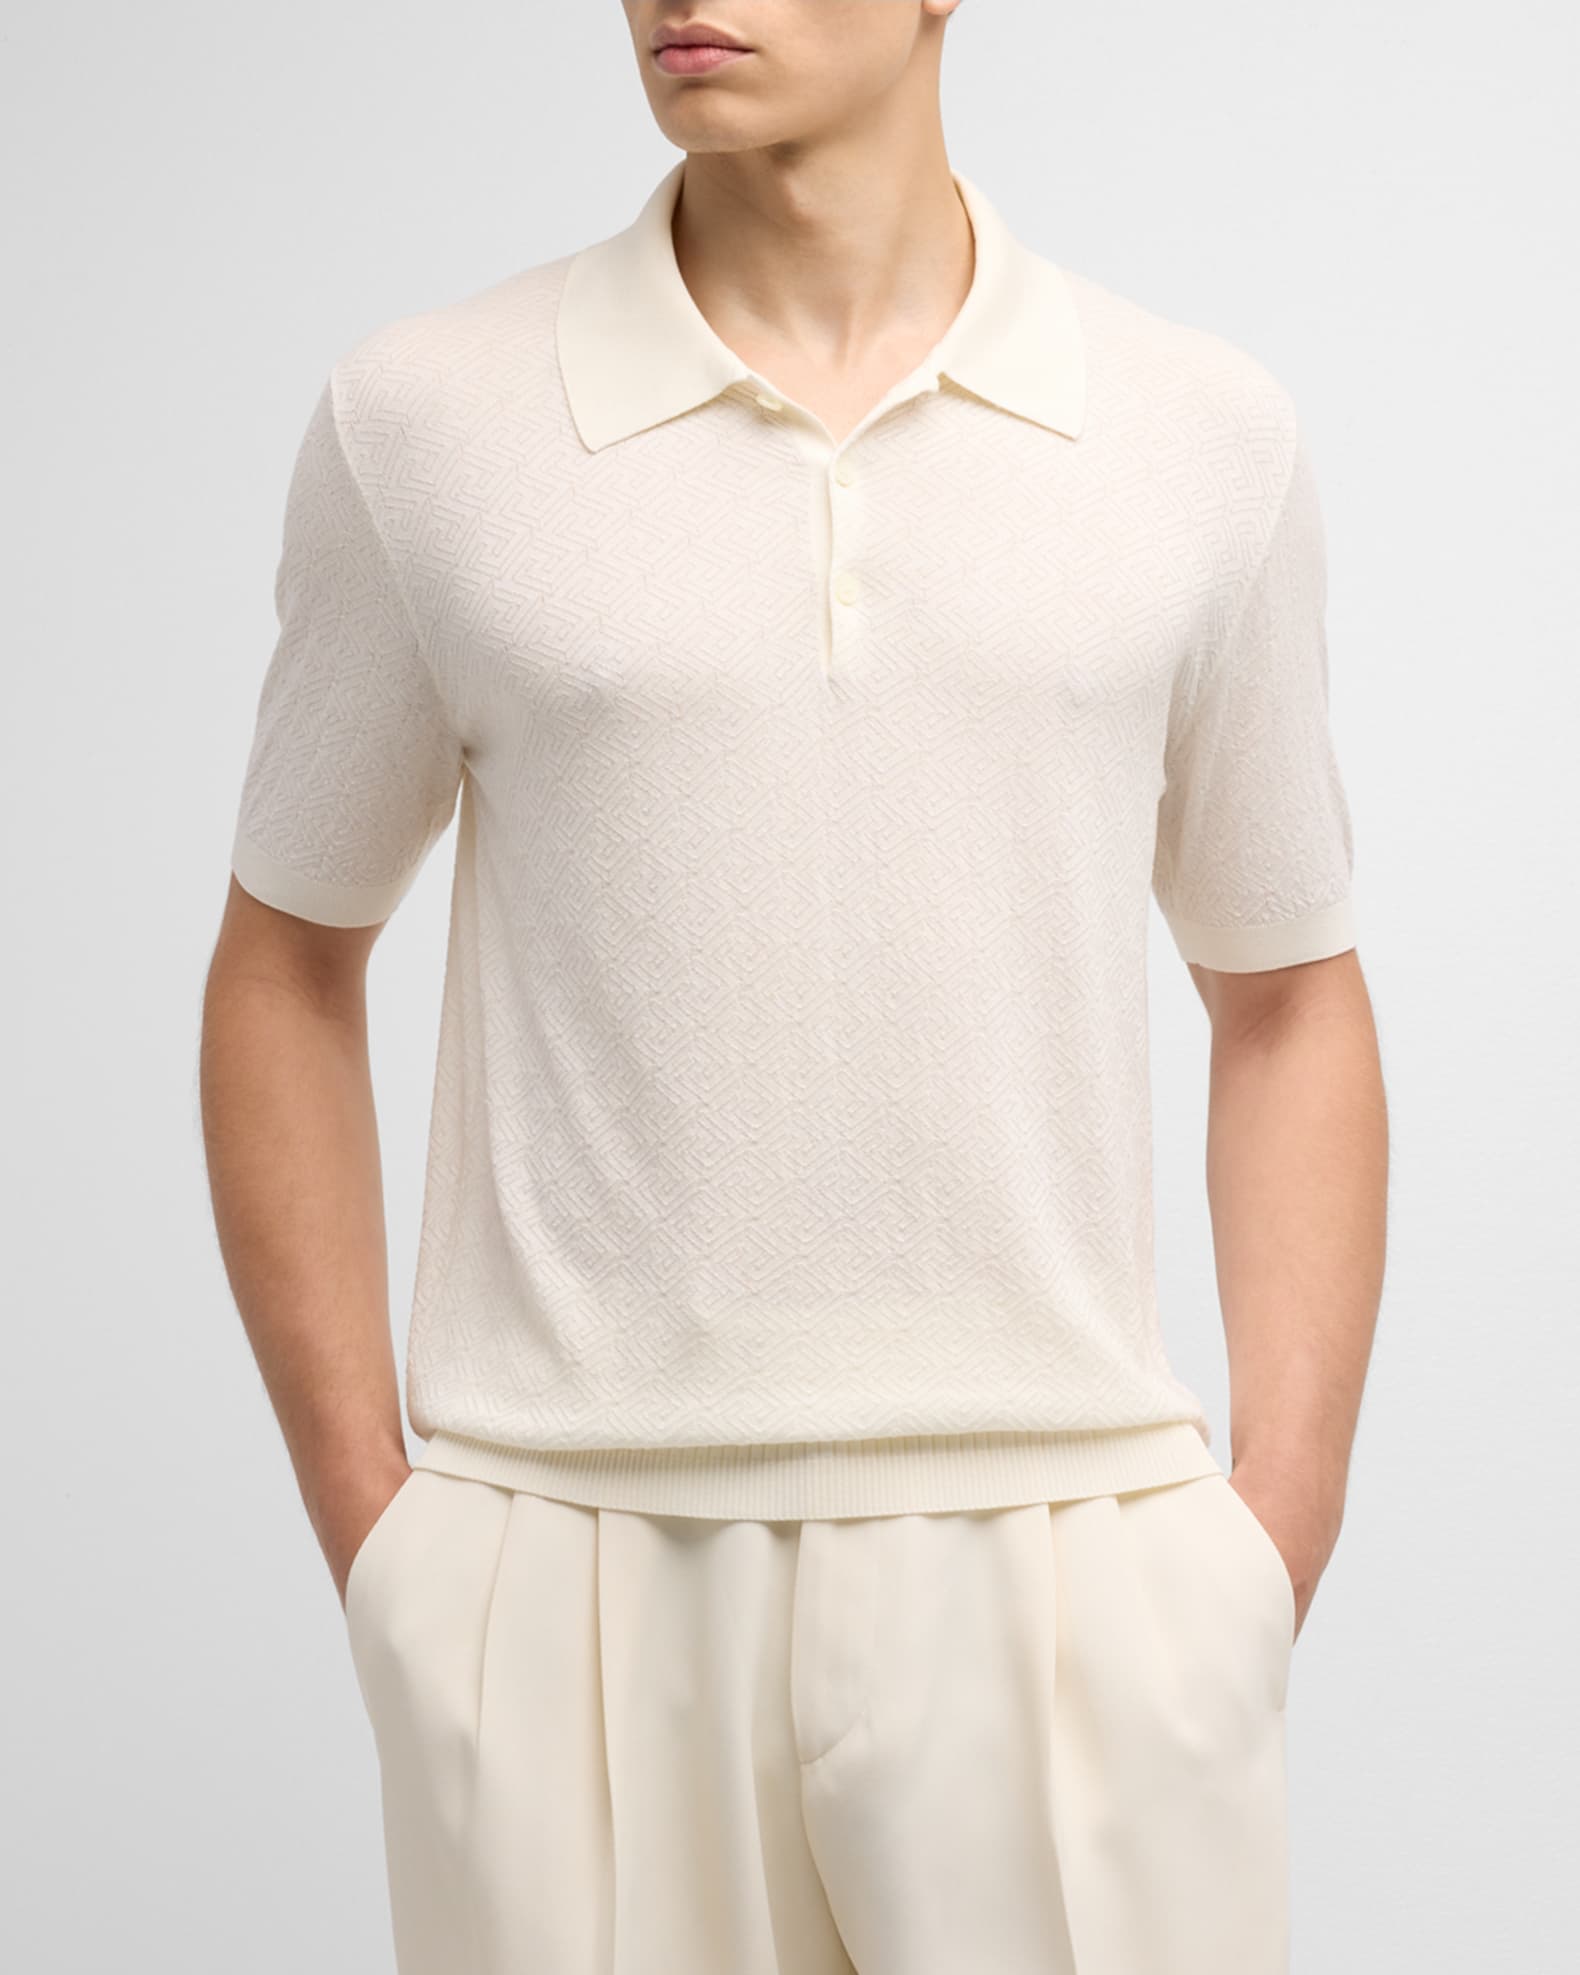 Men's Jacquard Polo Shirt